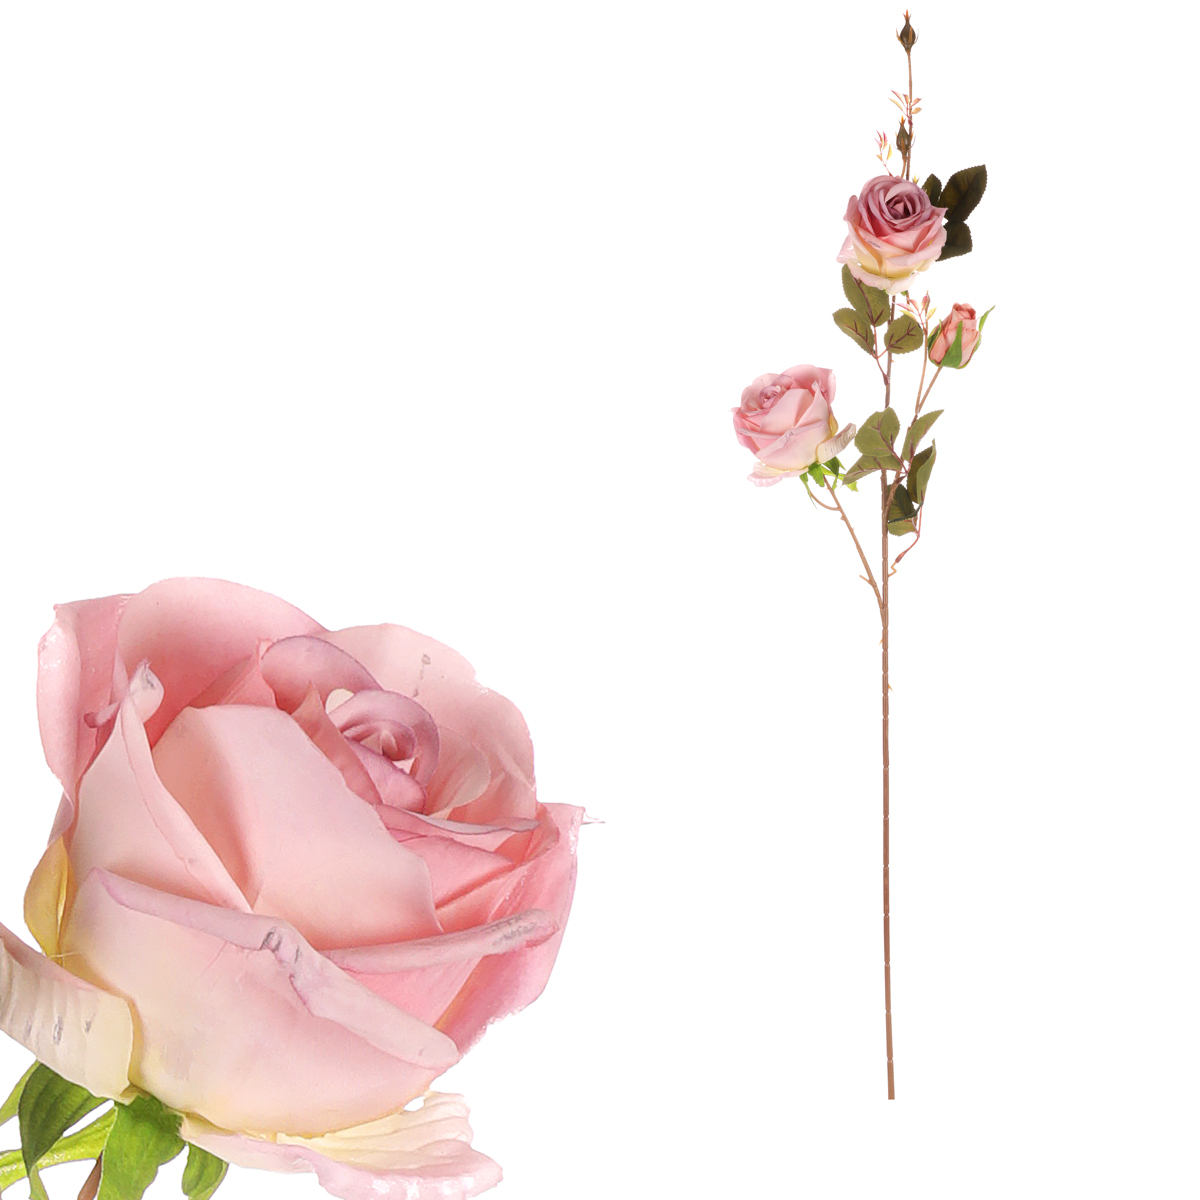 Růže, 3-květá, barva růžová.